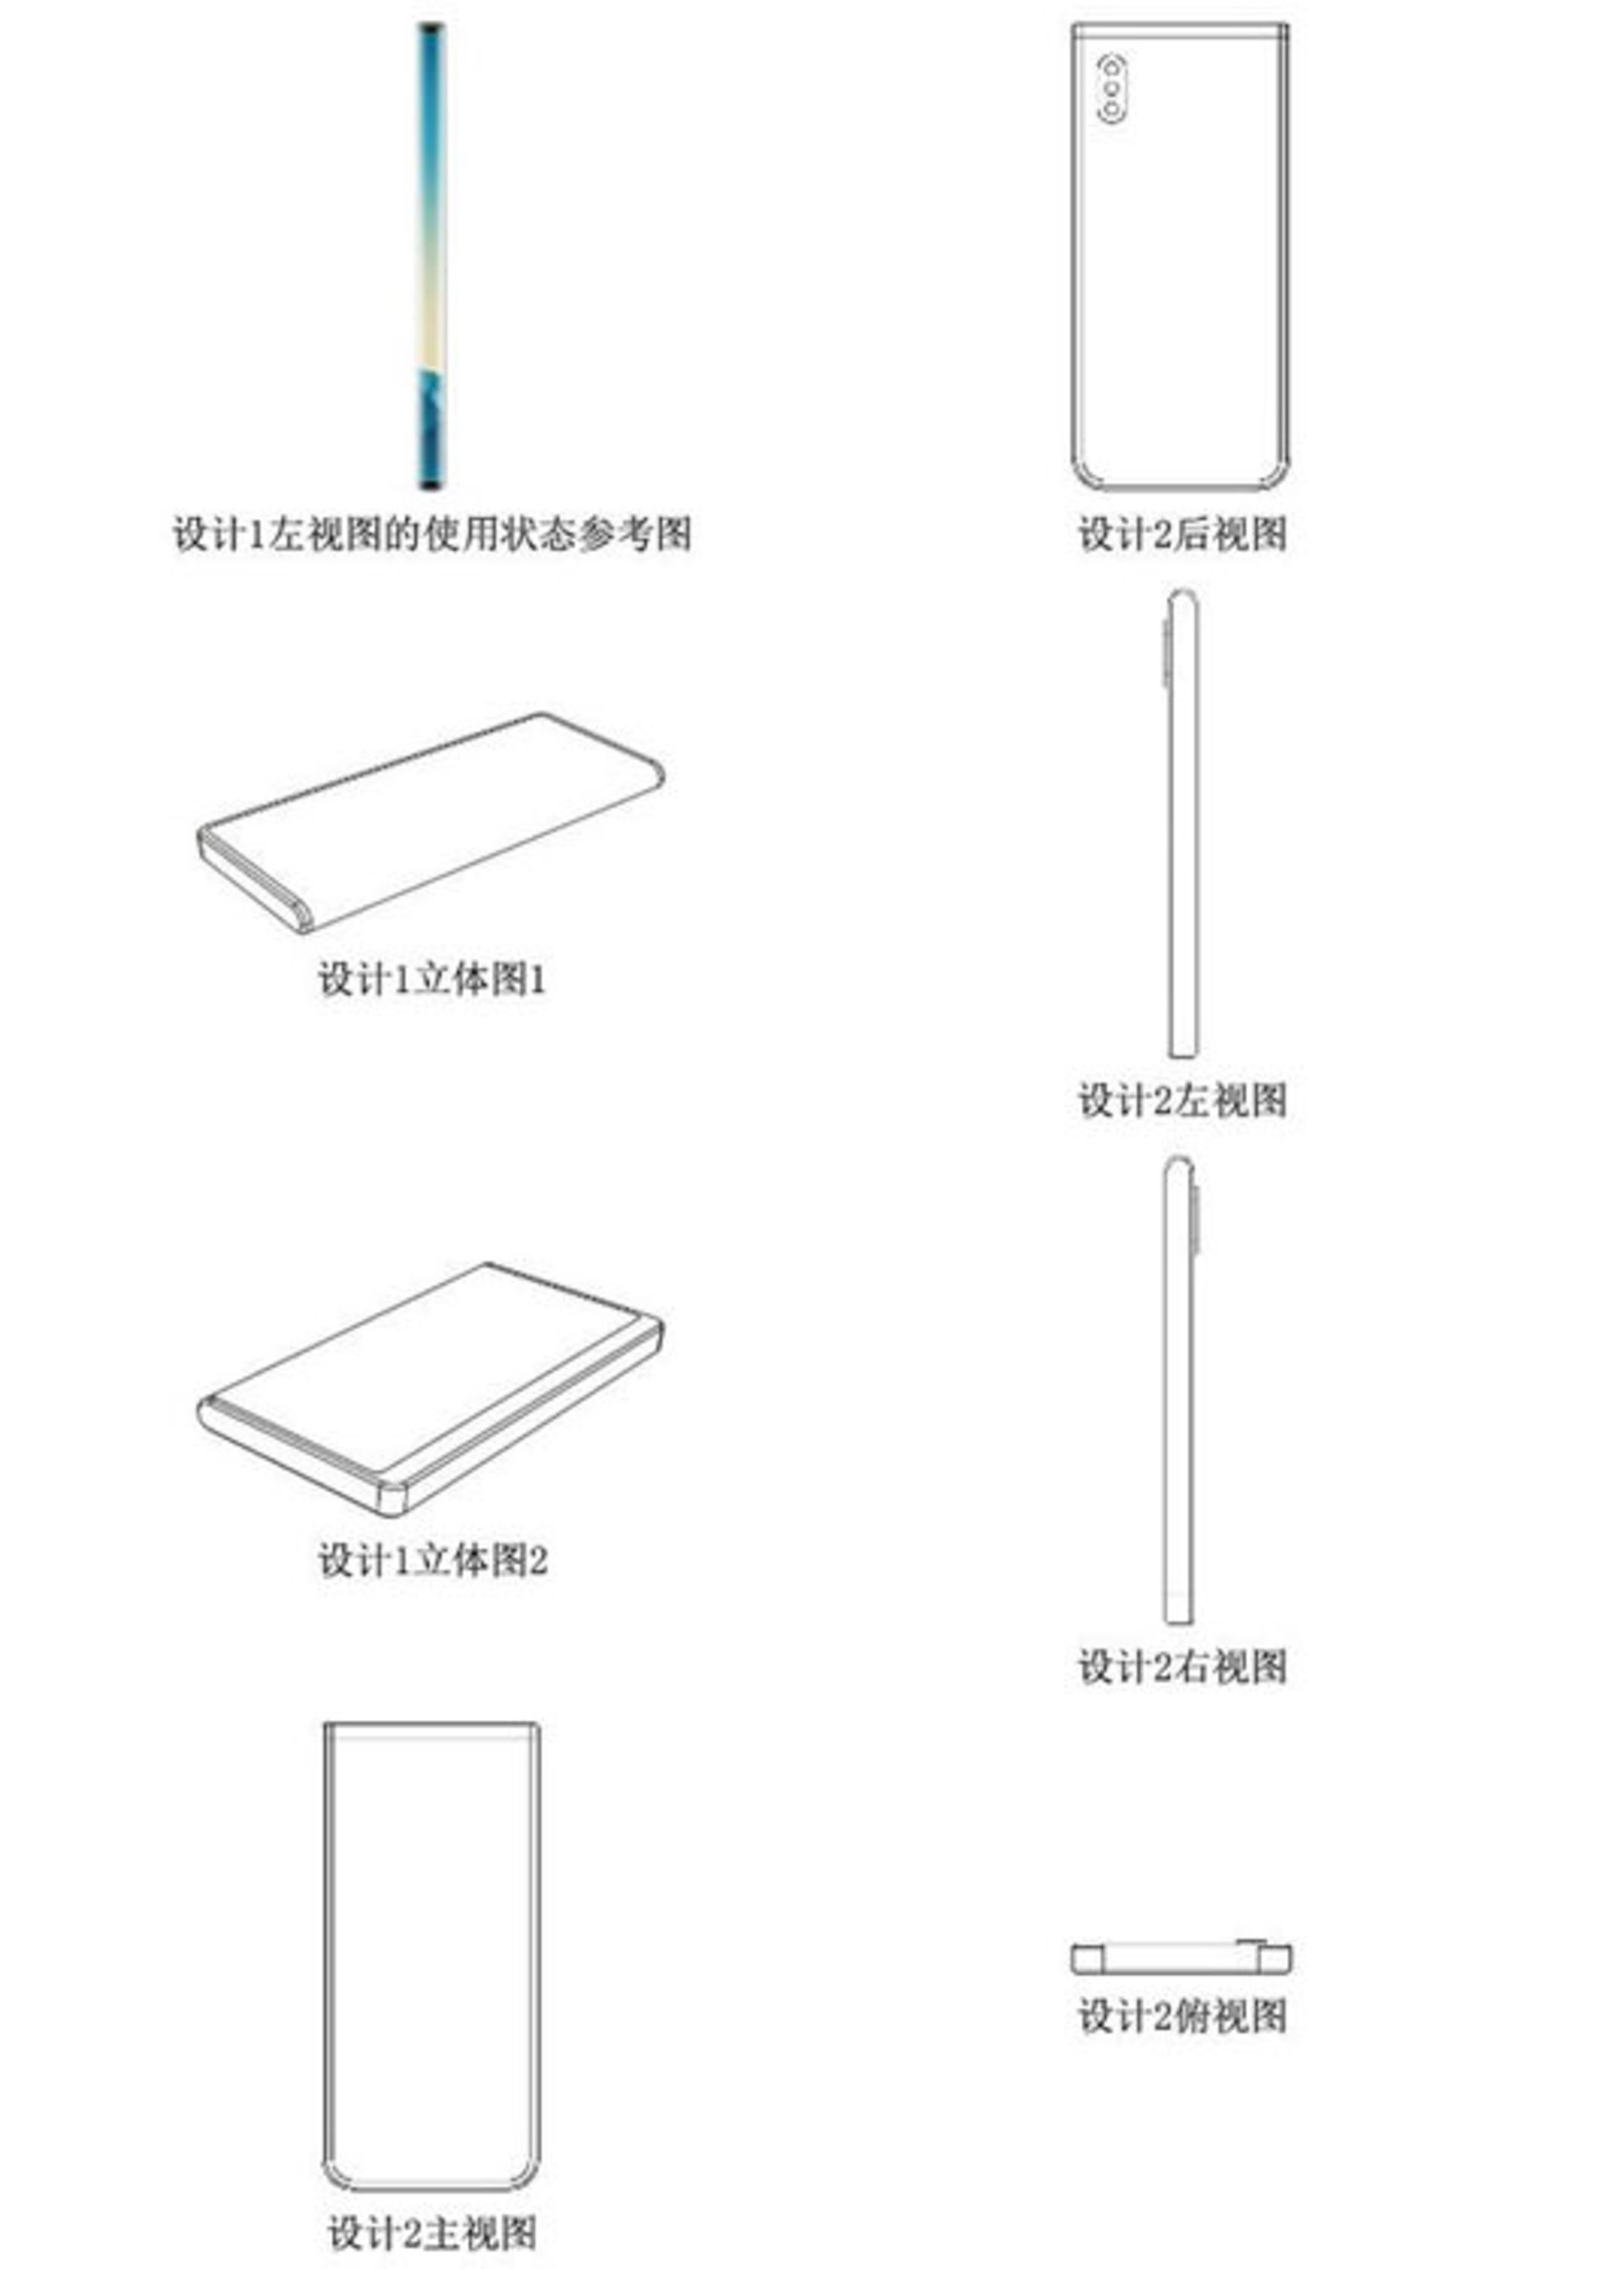 پتنت های شیائومی برای دستگاه با سه صفحه نمایش